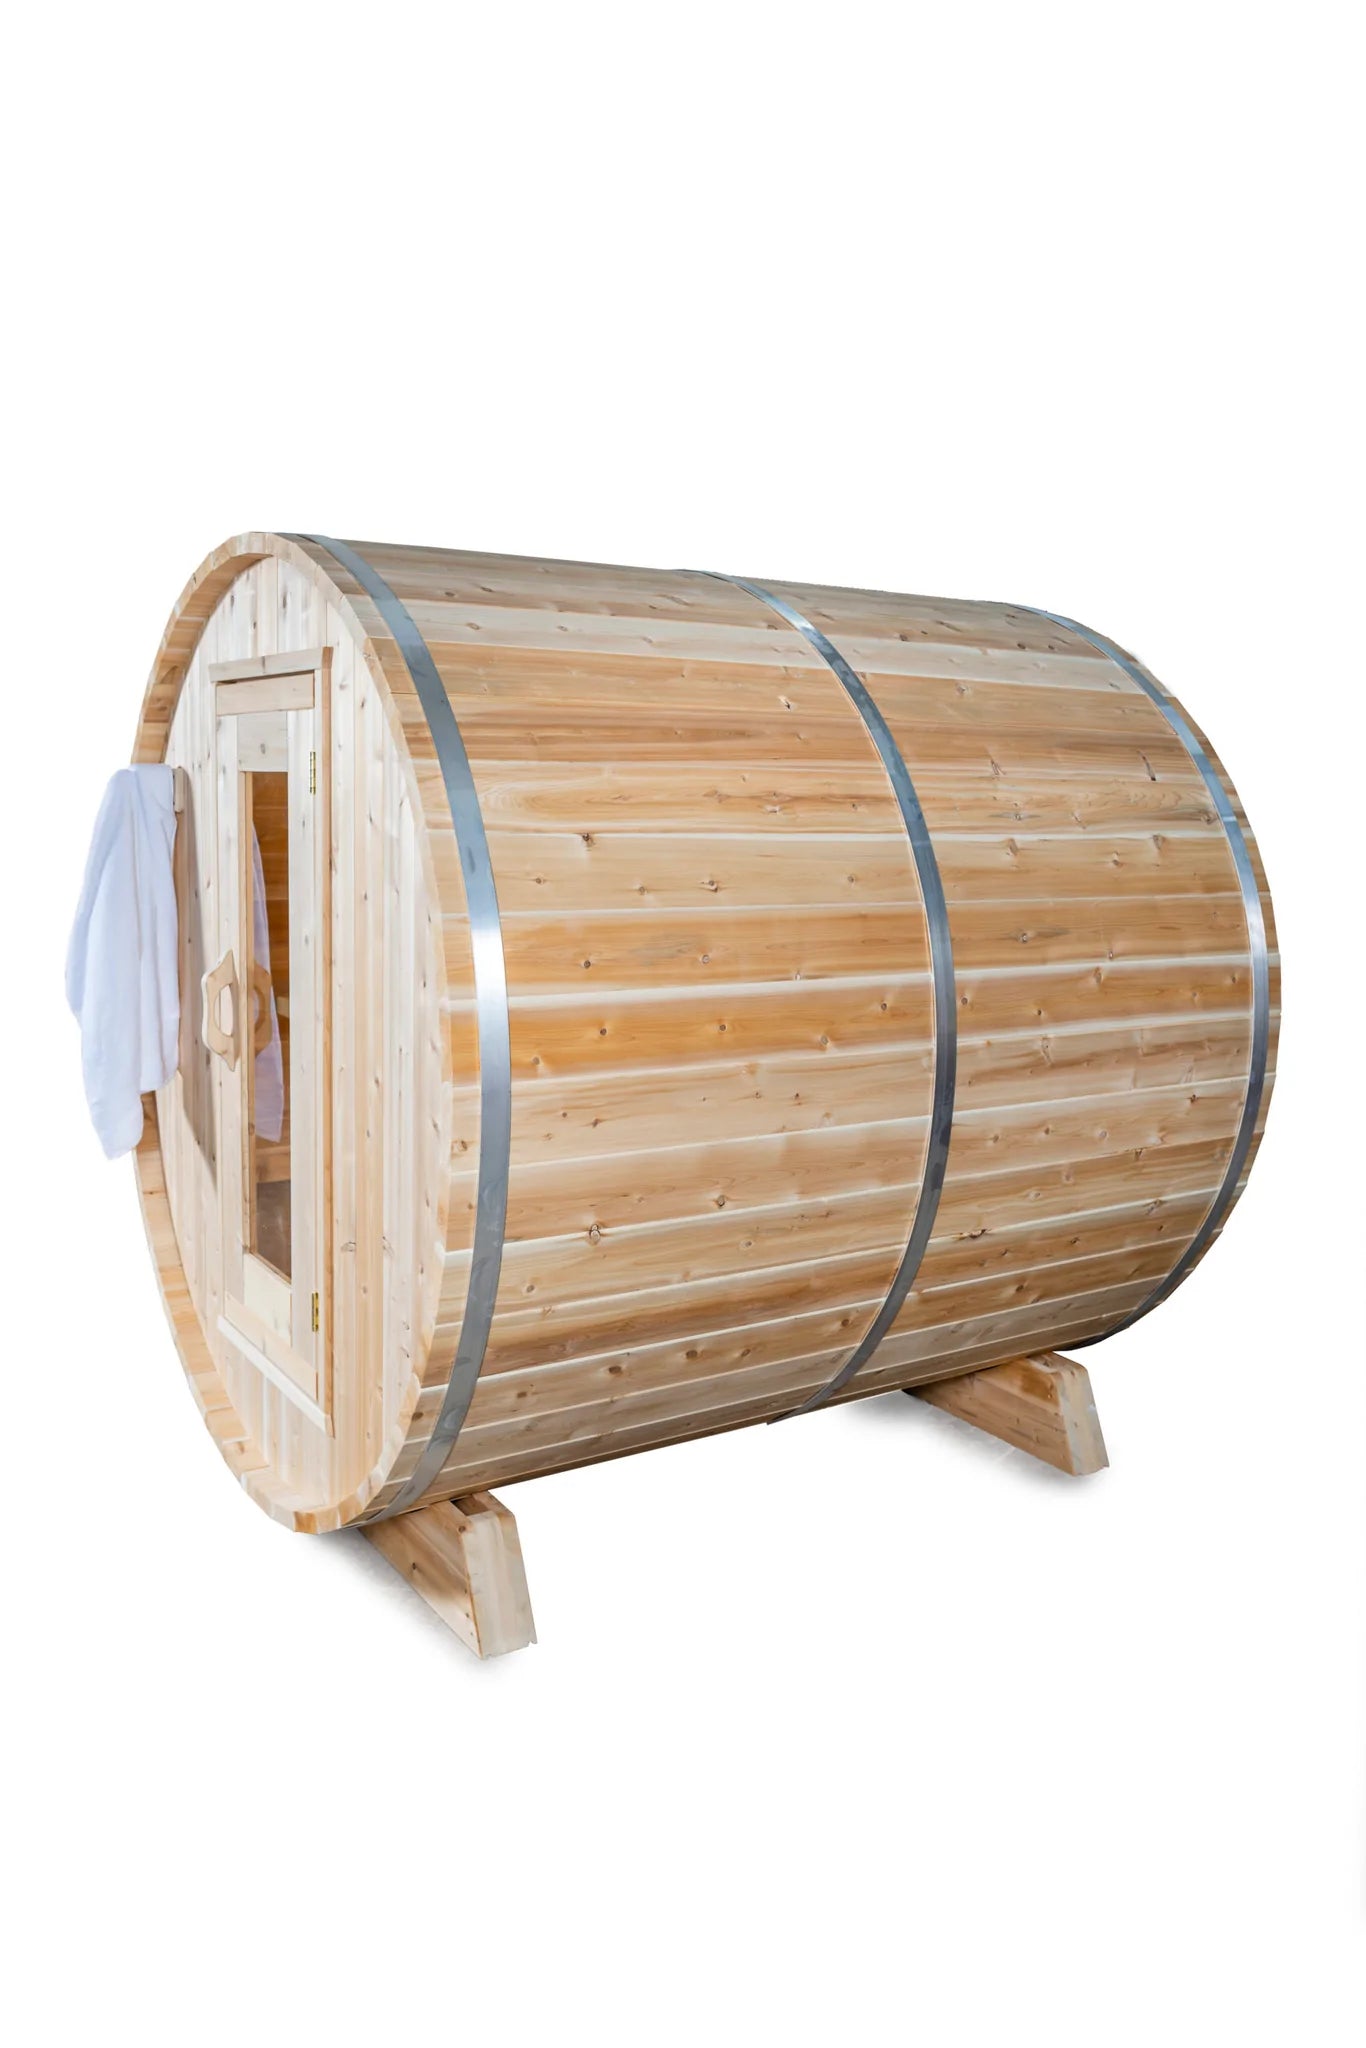 Harmony CTC22W Dundalk Sauna Kit by LeisureCraft™